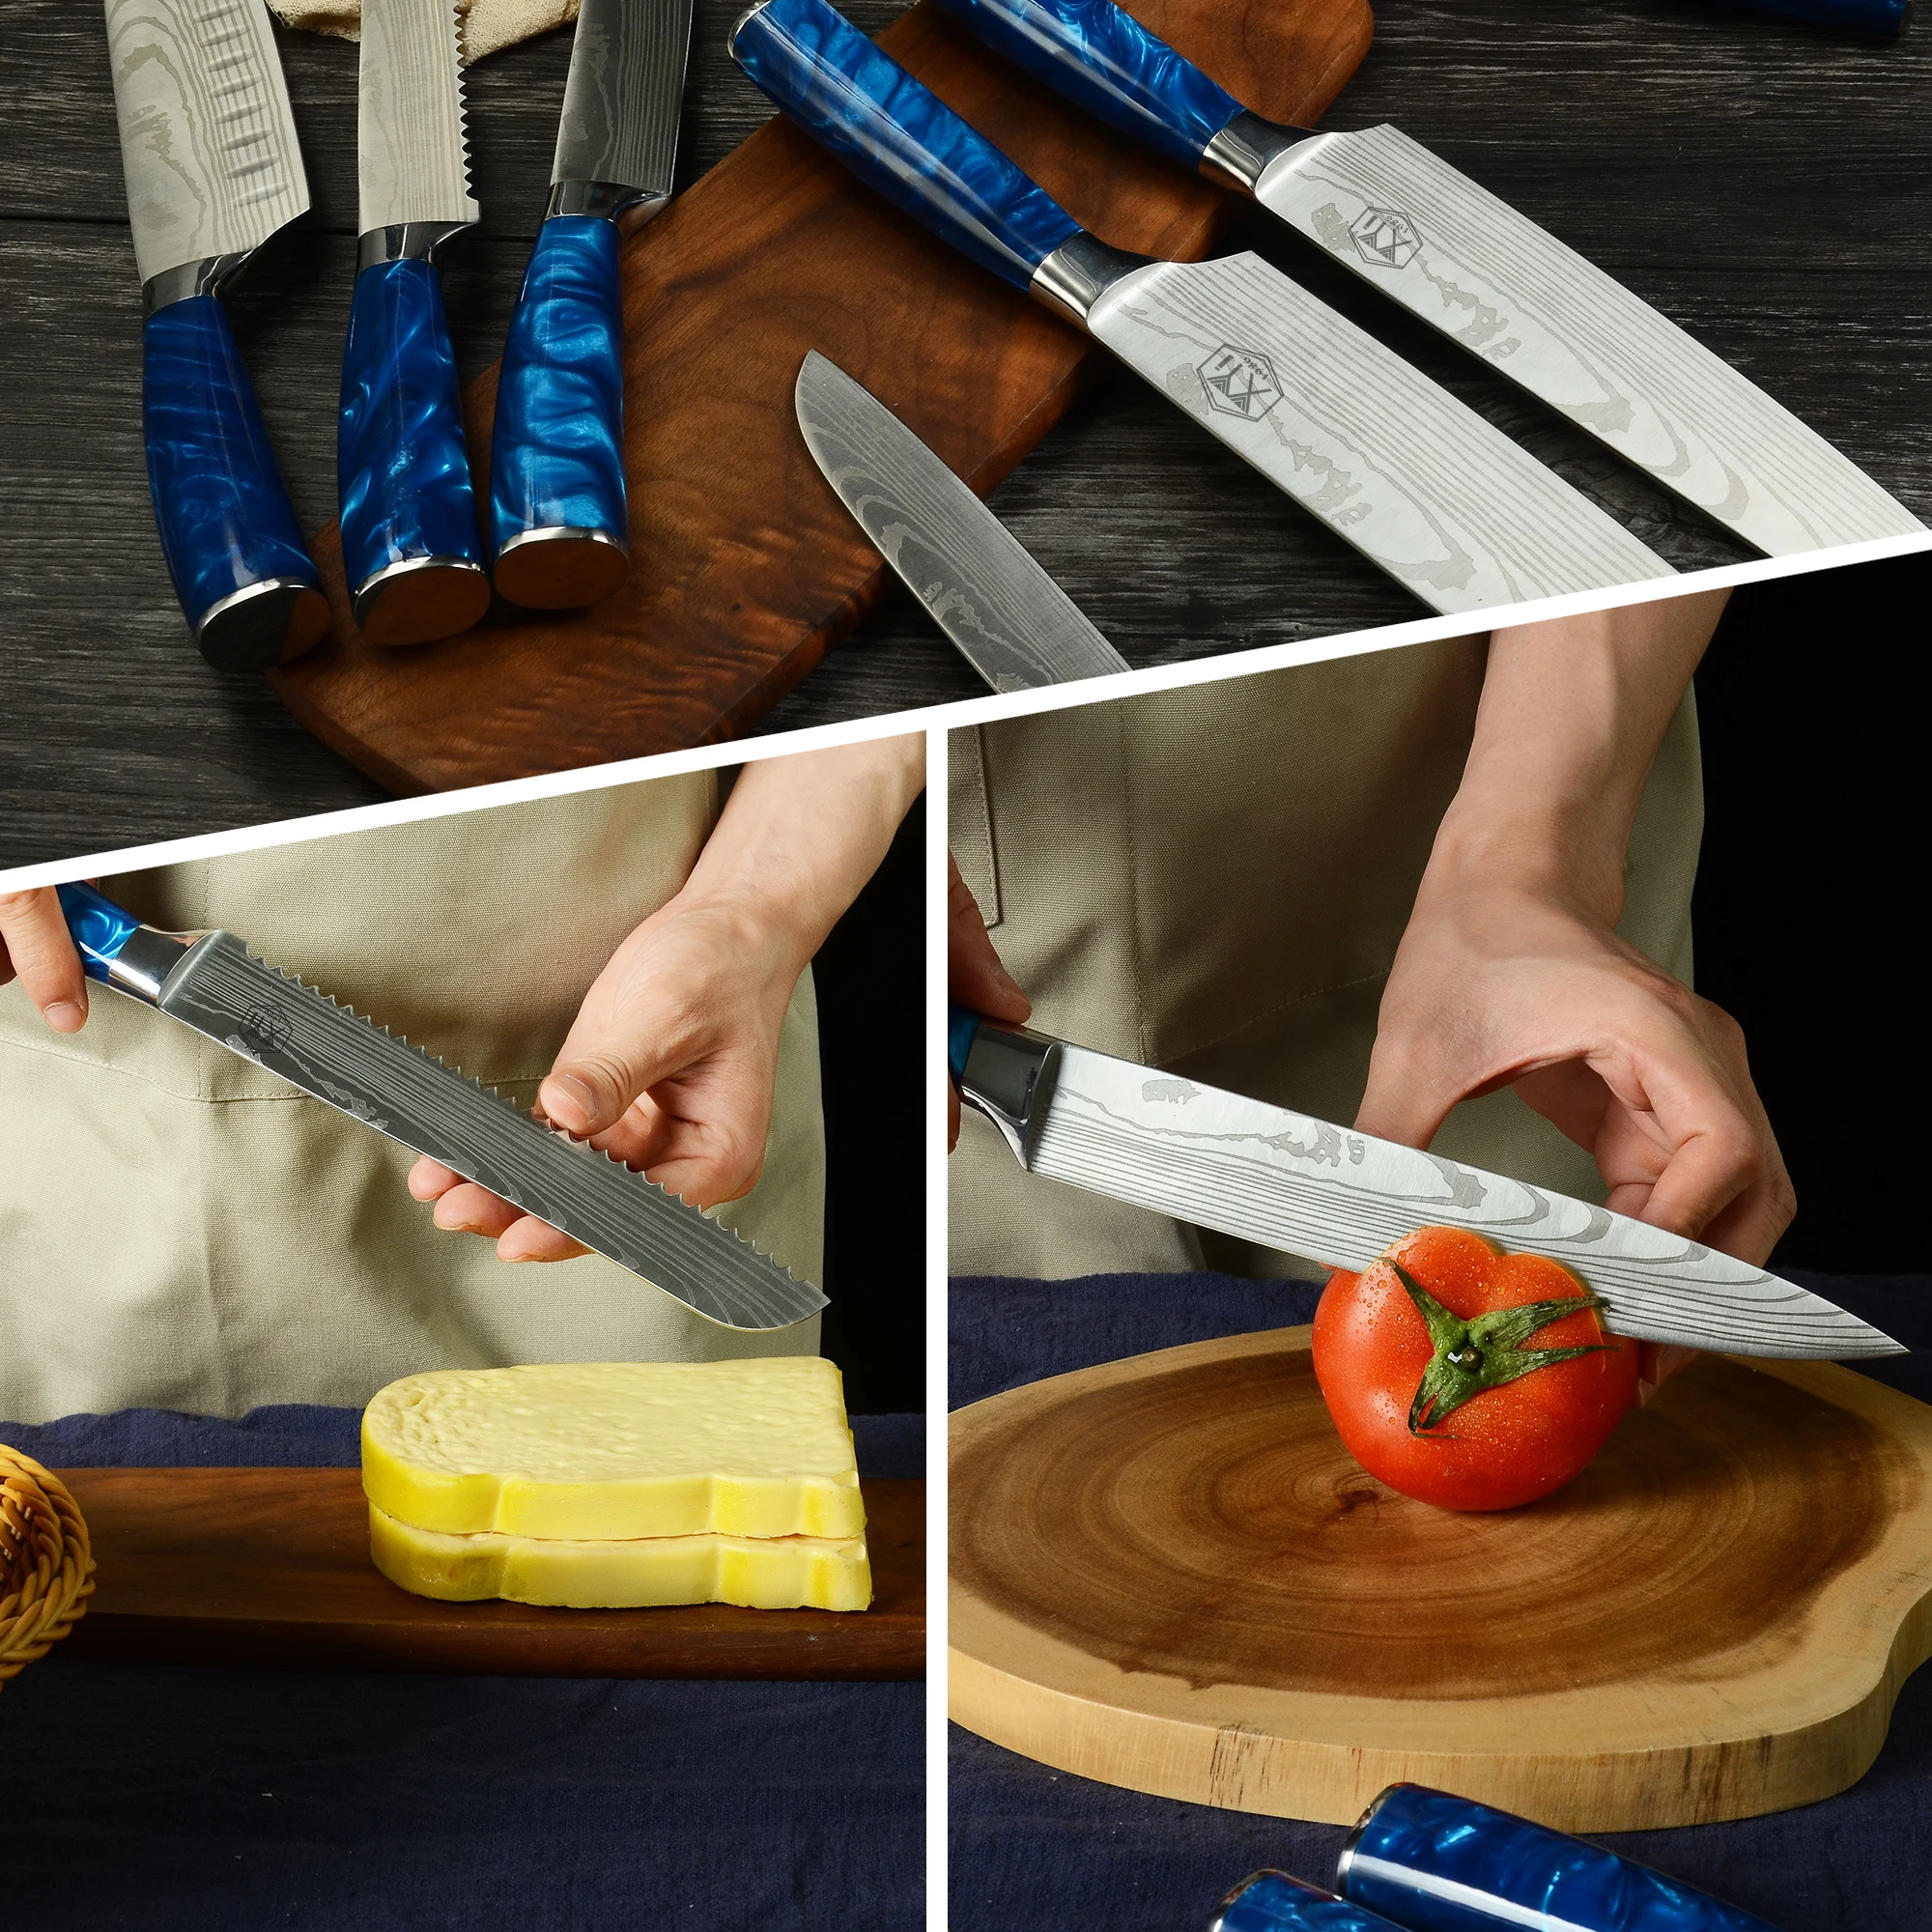  SANDEWILY Juego de cuchillos de cocina profesionales de acero  inoxidable de alto carbono, 3 cuchillos japoneses ultra afilados con funda,  mango ergonómico de madera de Pakkawood elegante caja de regalo para